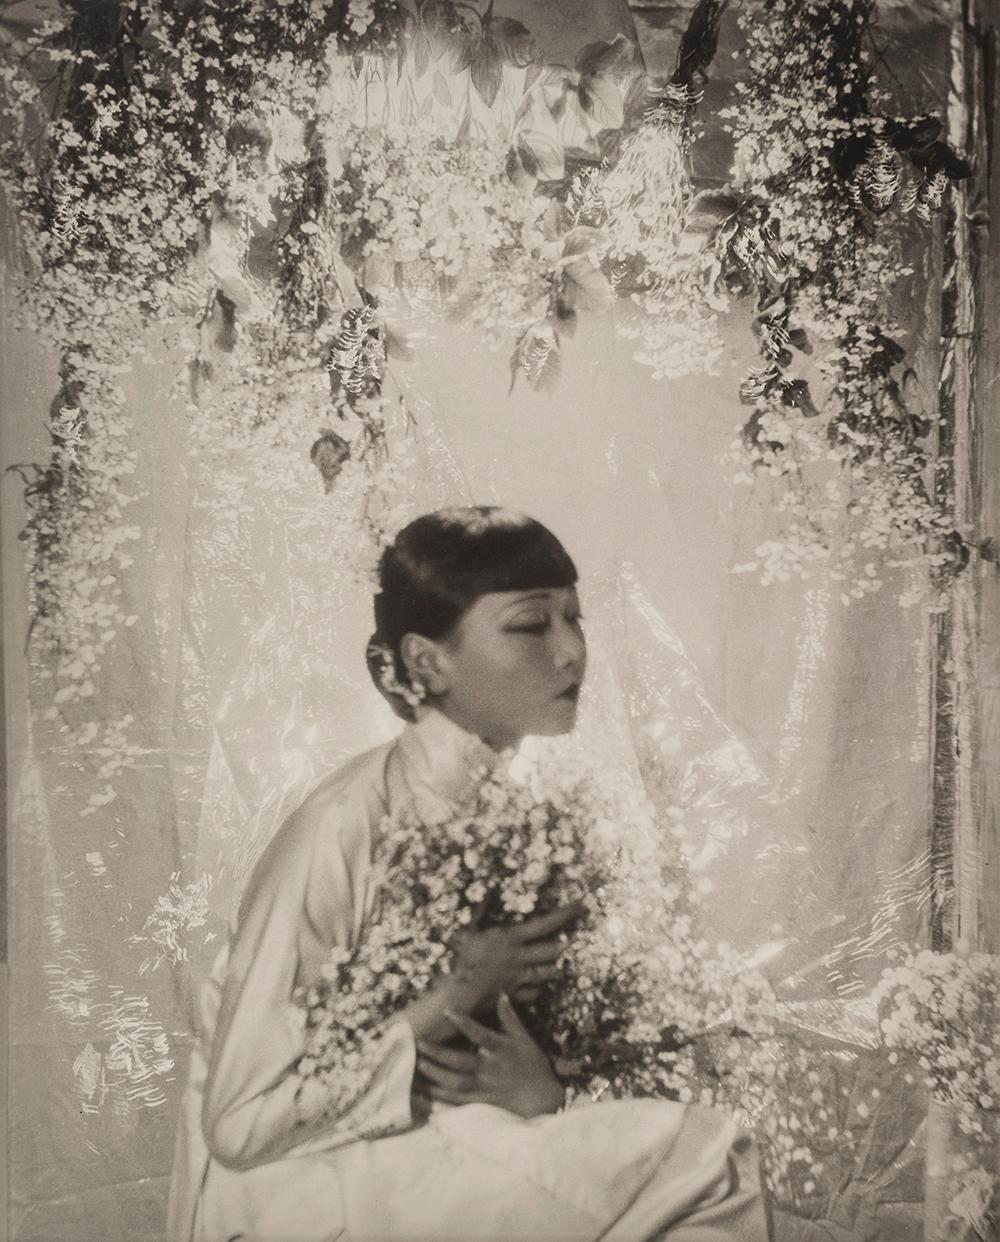 Anna May Wong, 1930 - Cecil Beaton (Porträtfotografie)
Signiert im Passepartout
Auf der Rückseite des Passepartouts mit dem Tintenstempel des Fotostudios gestempelt
Silbergelatineabzug auf Karton aufgezogen, gedruckt 1970er Jahre
22 x 17 Zoll

Cecil